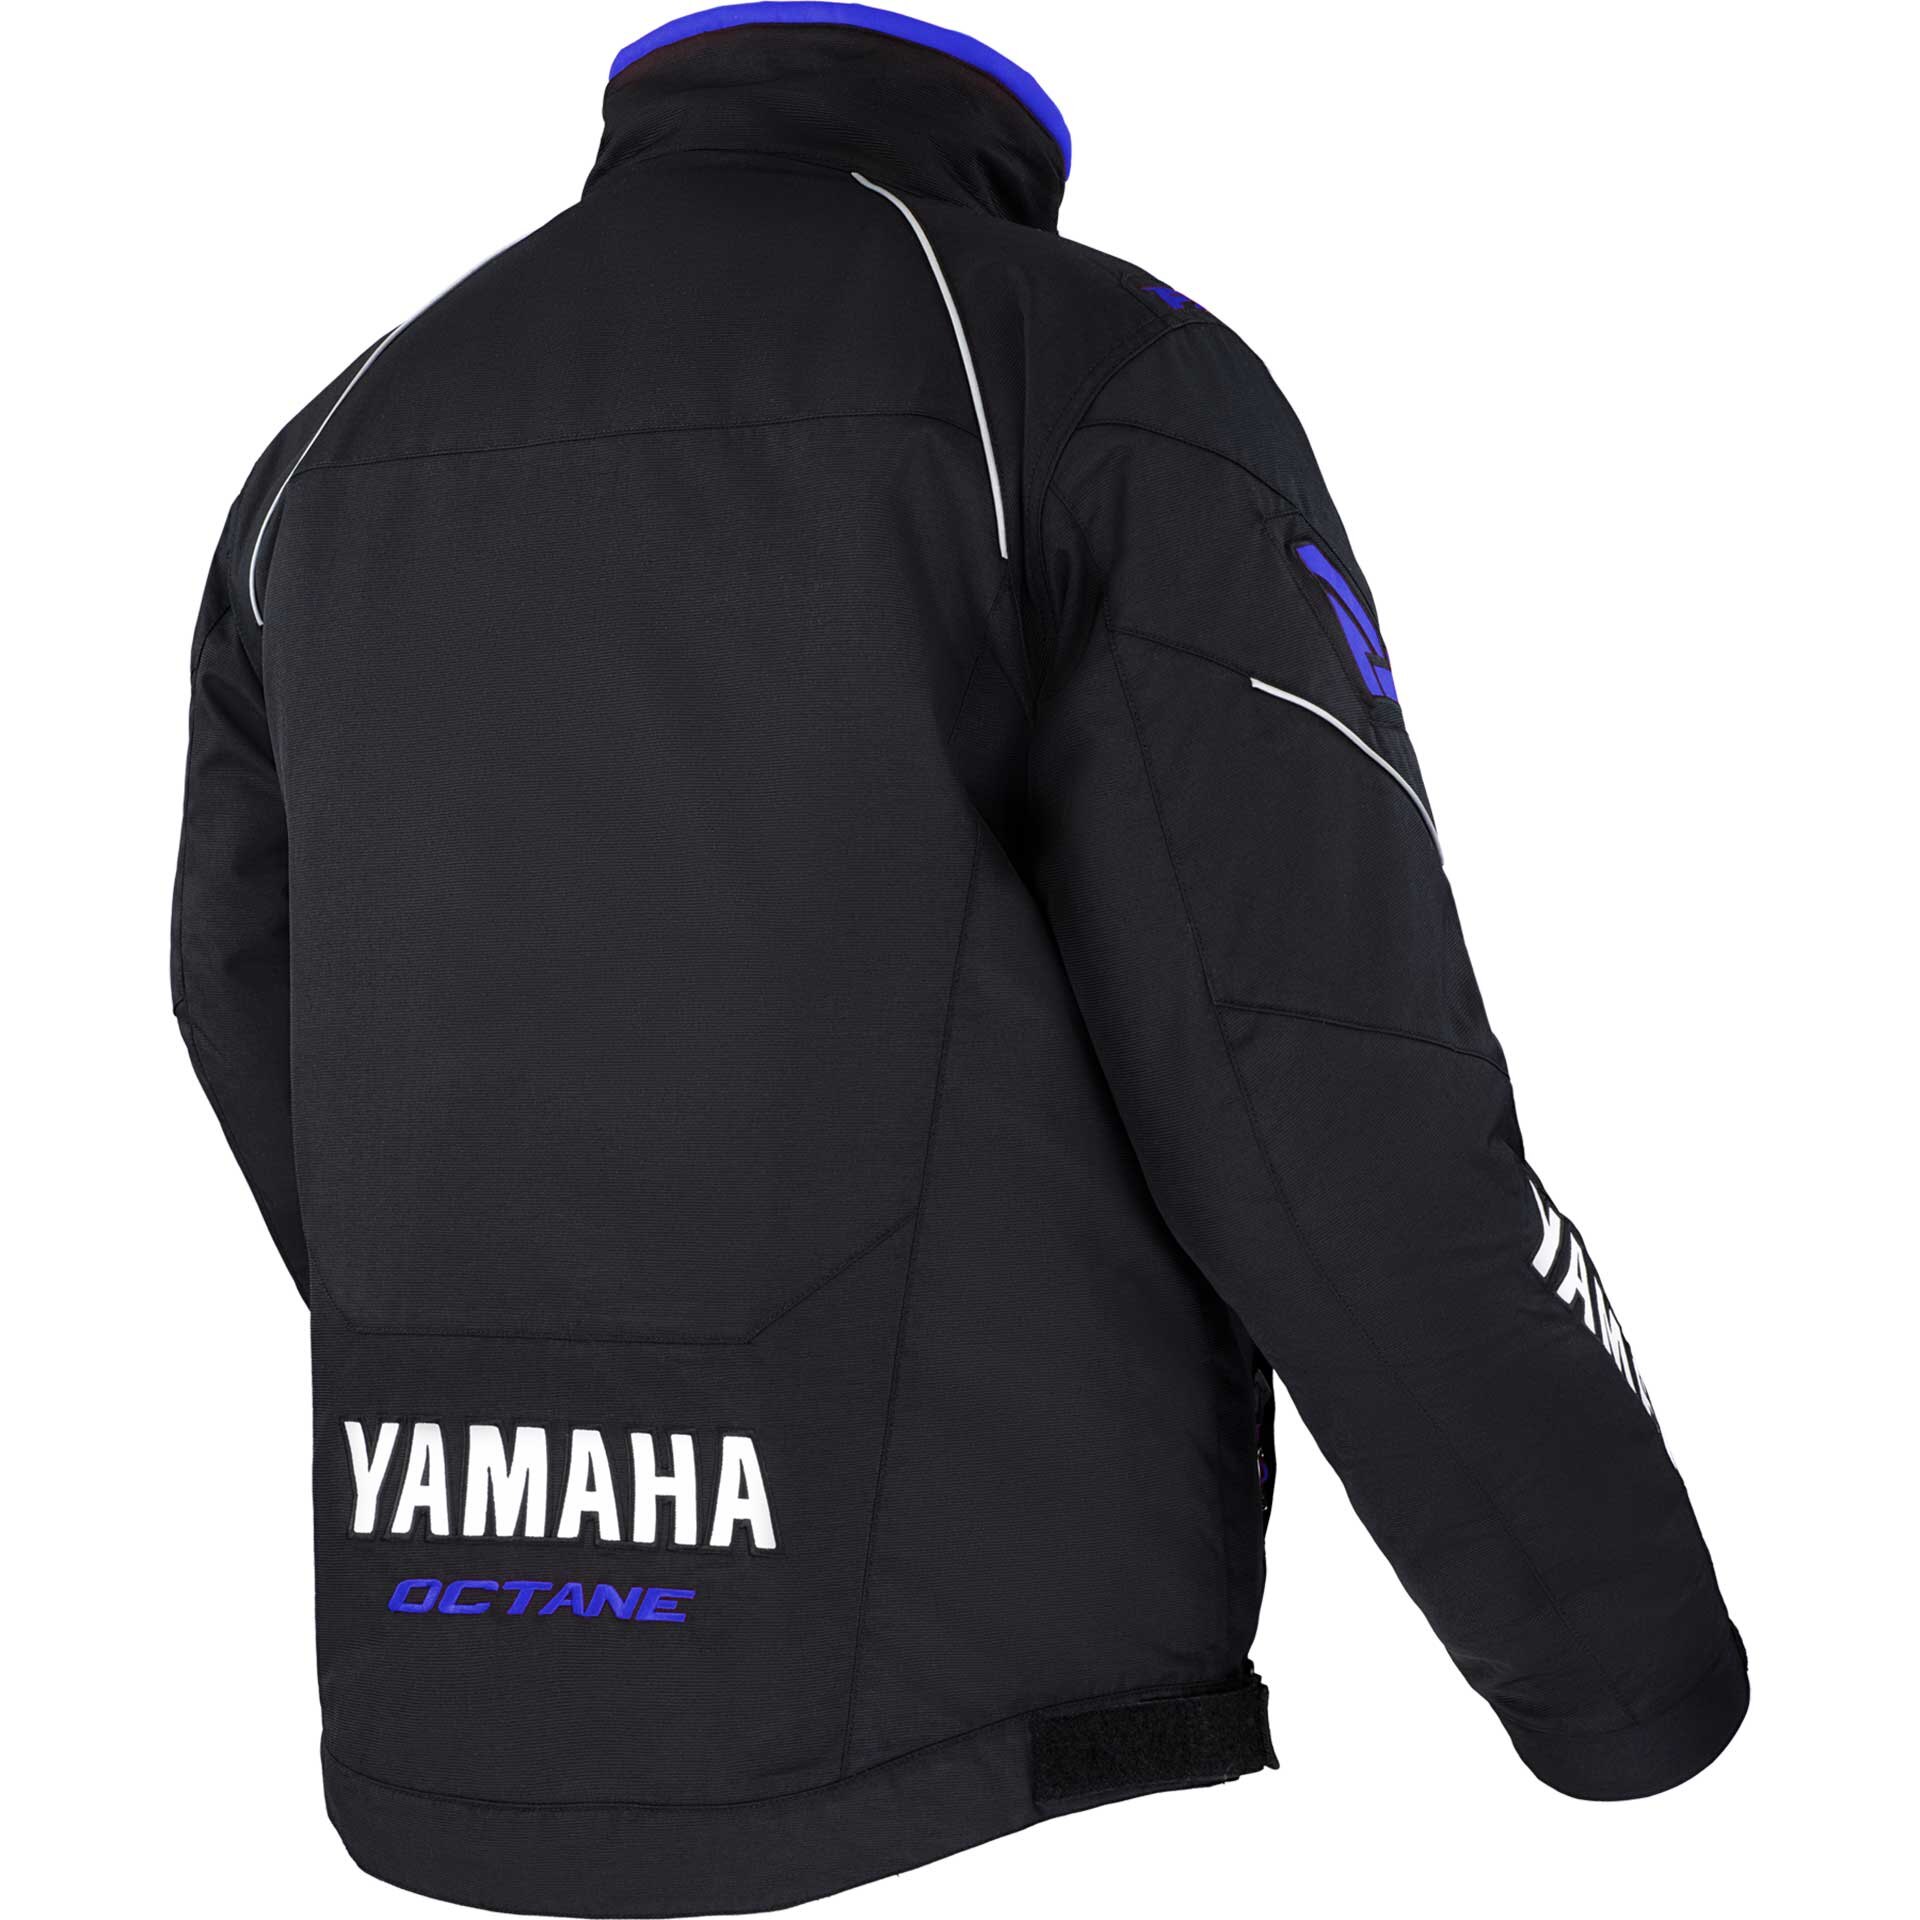 Yamaha Octane Jacket by FXR®